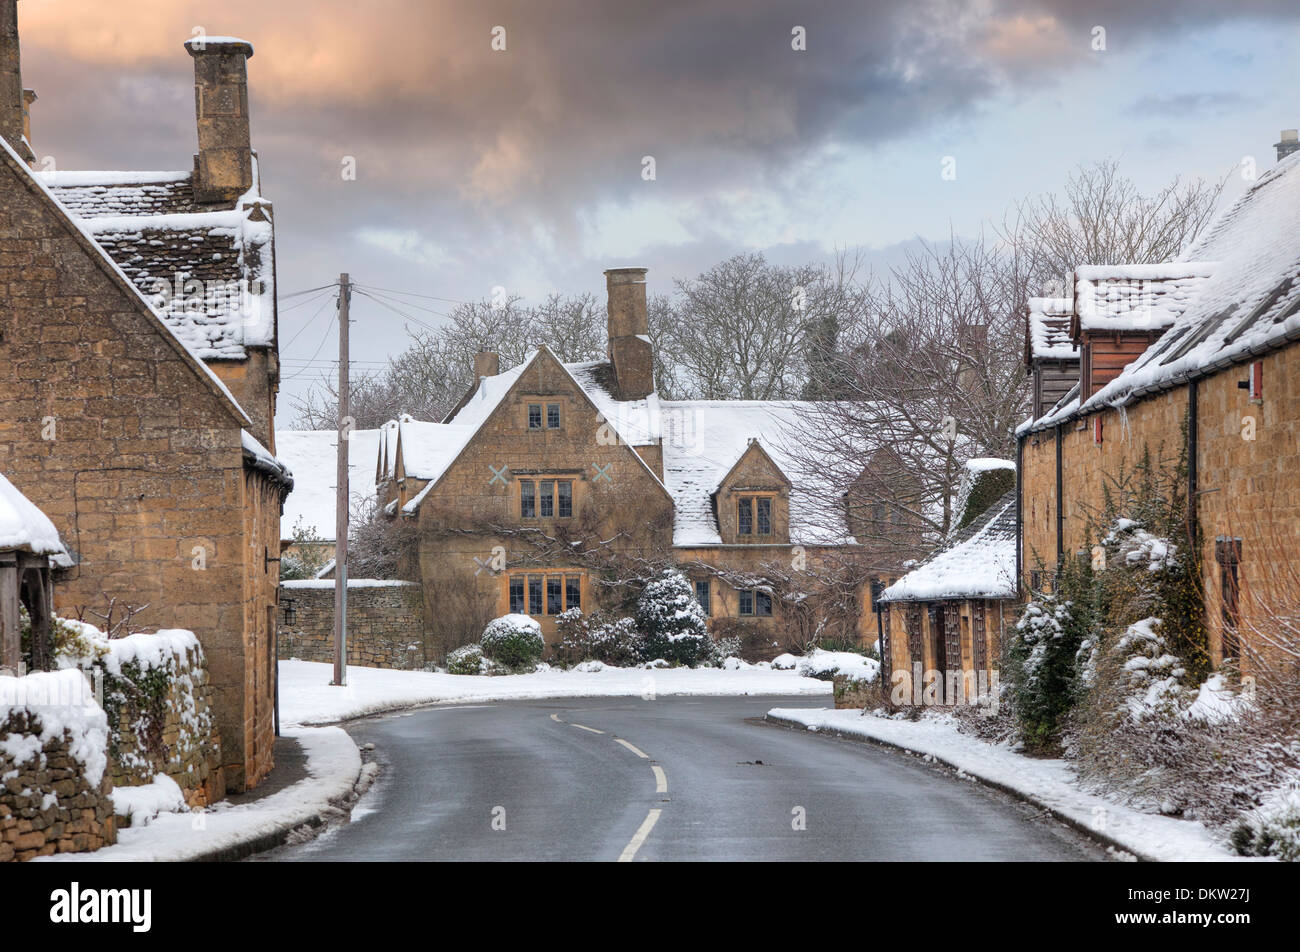 Cotswold village de neige, Weston Subedge près de Chipping Campden, Gloucestershire, Angleterre. Banque D'Images